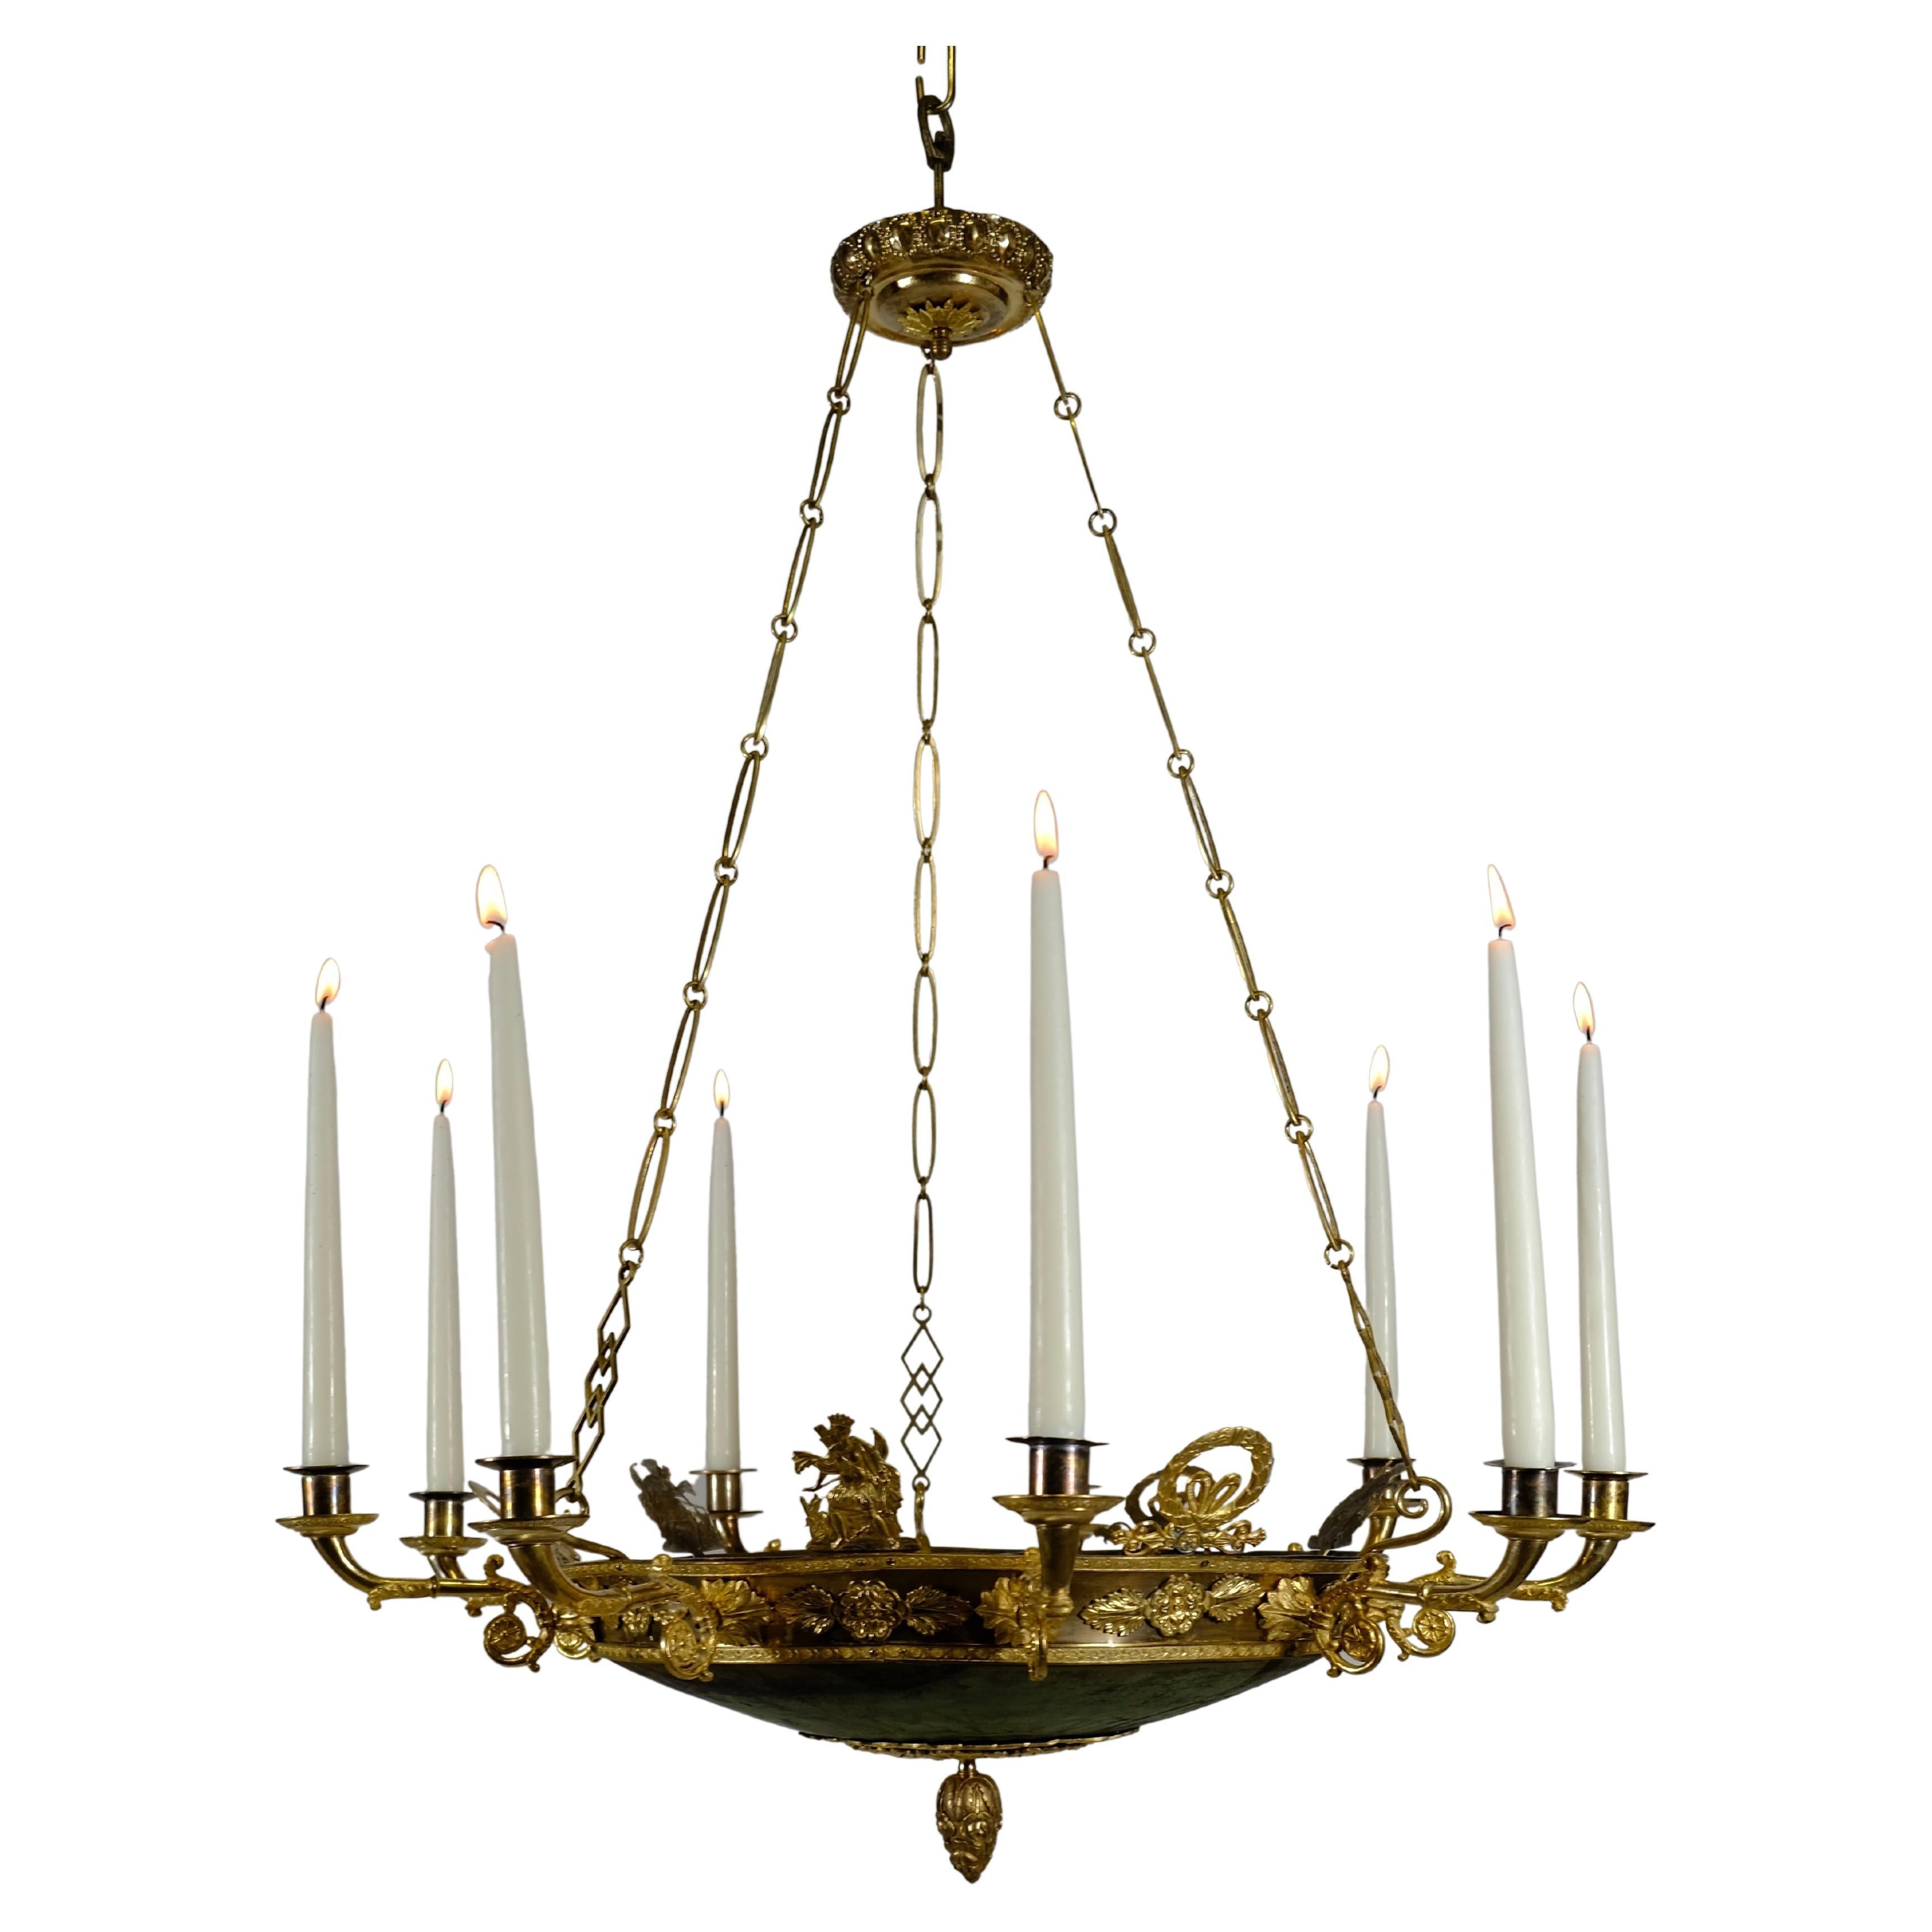 Antique Empire 9 Light Chandelier, Made circa 1820